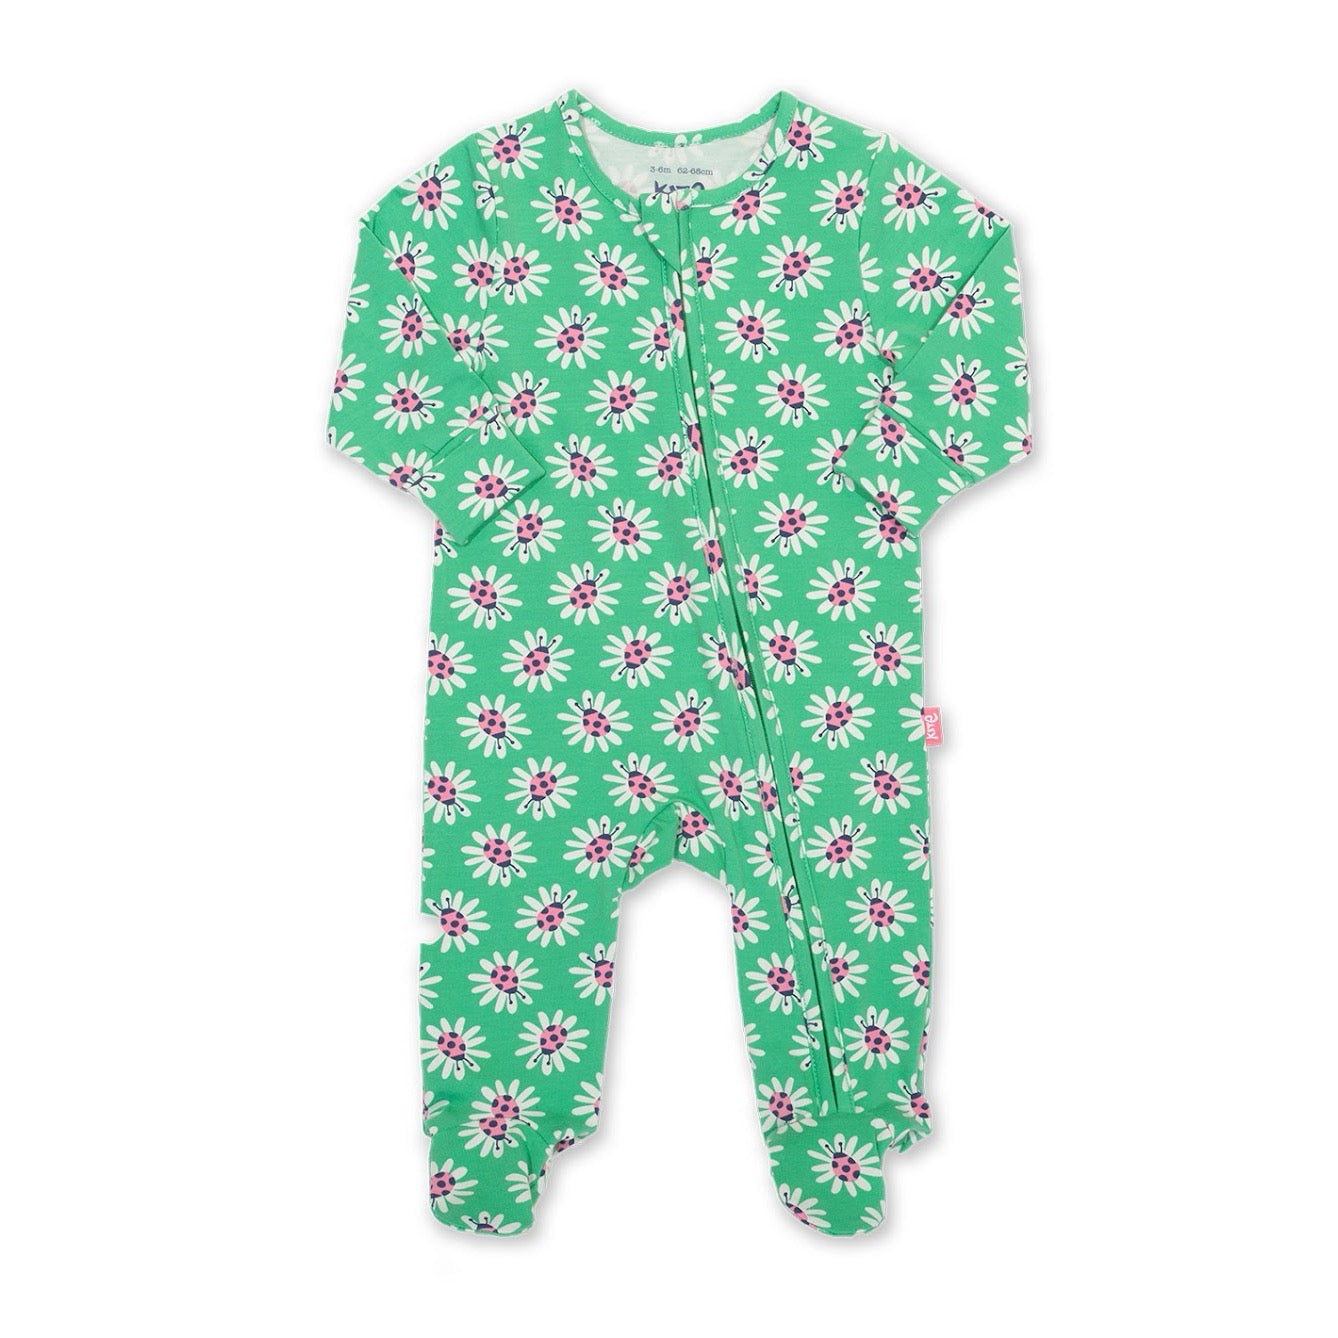 Kite Lady Daisy Baby Sleepsuit 41-8462 Clothing NEWBORN / Green,0-1M / Green,0-3M / Green,3-6M / Green,6-9M / Green